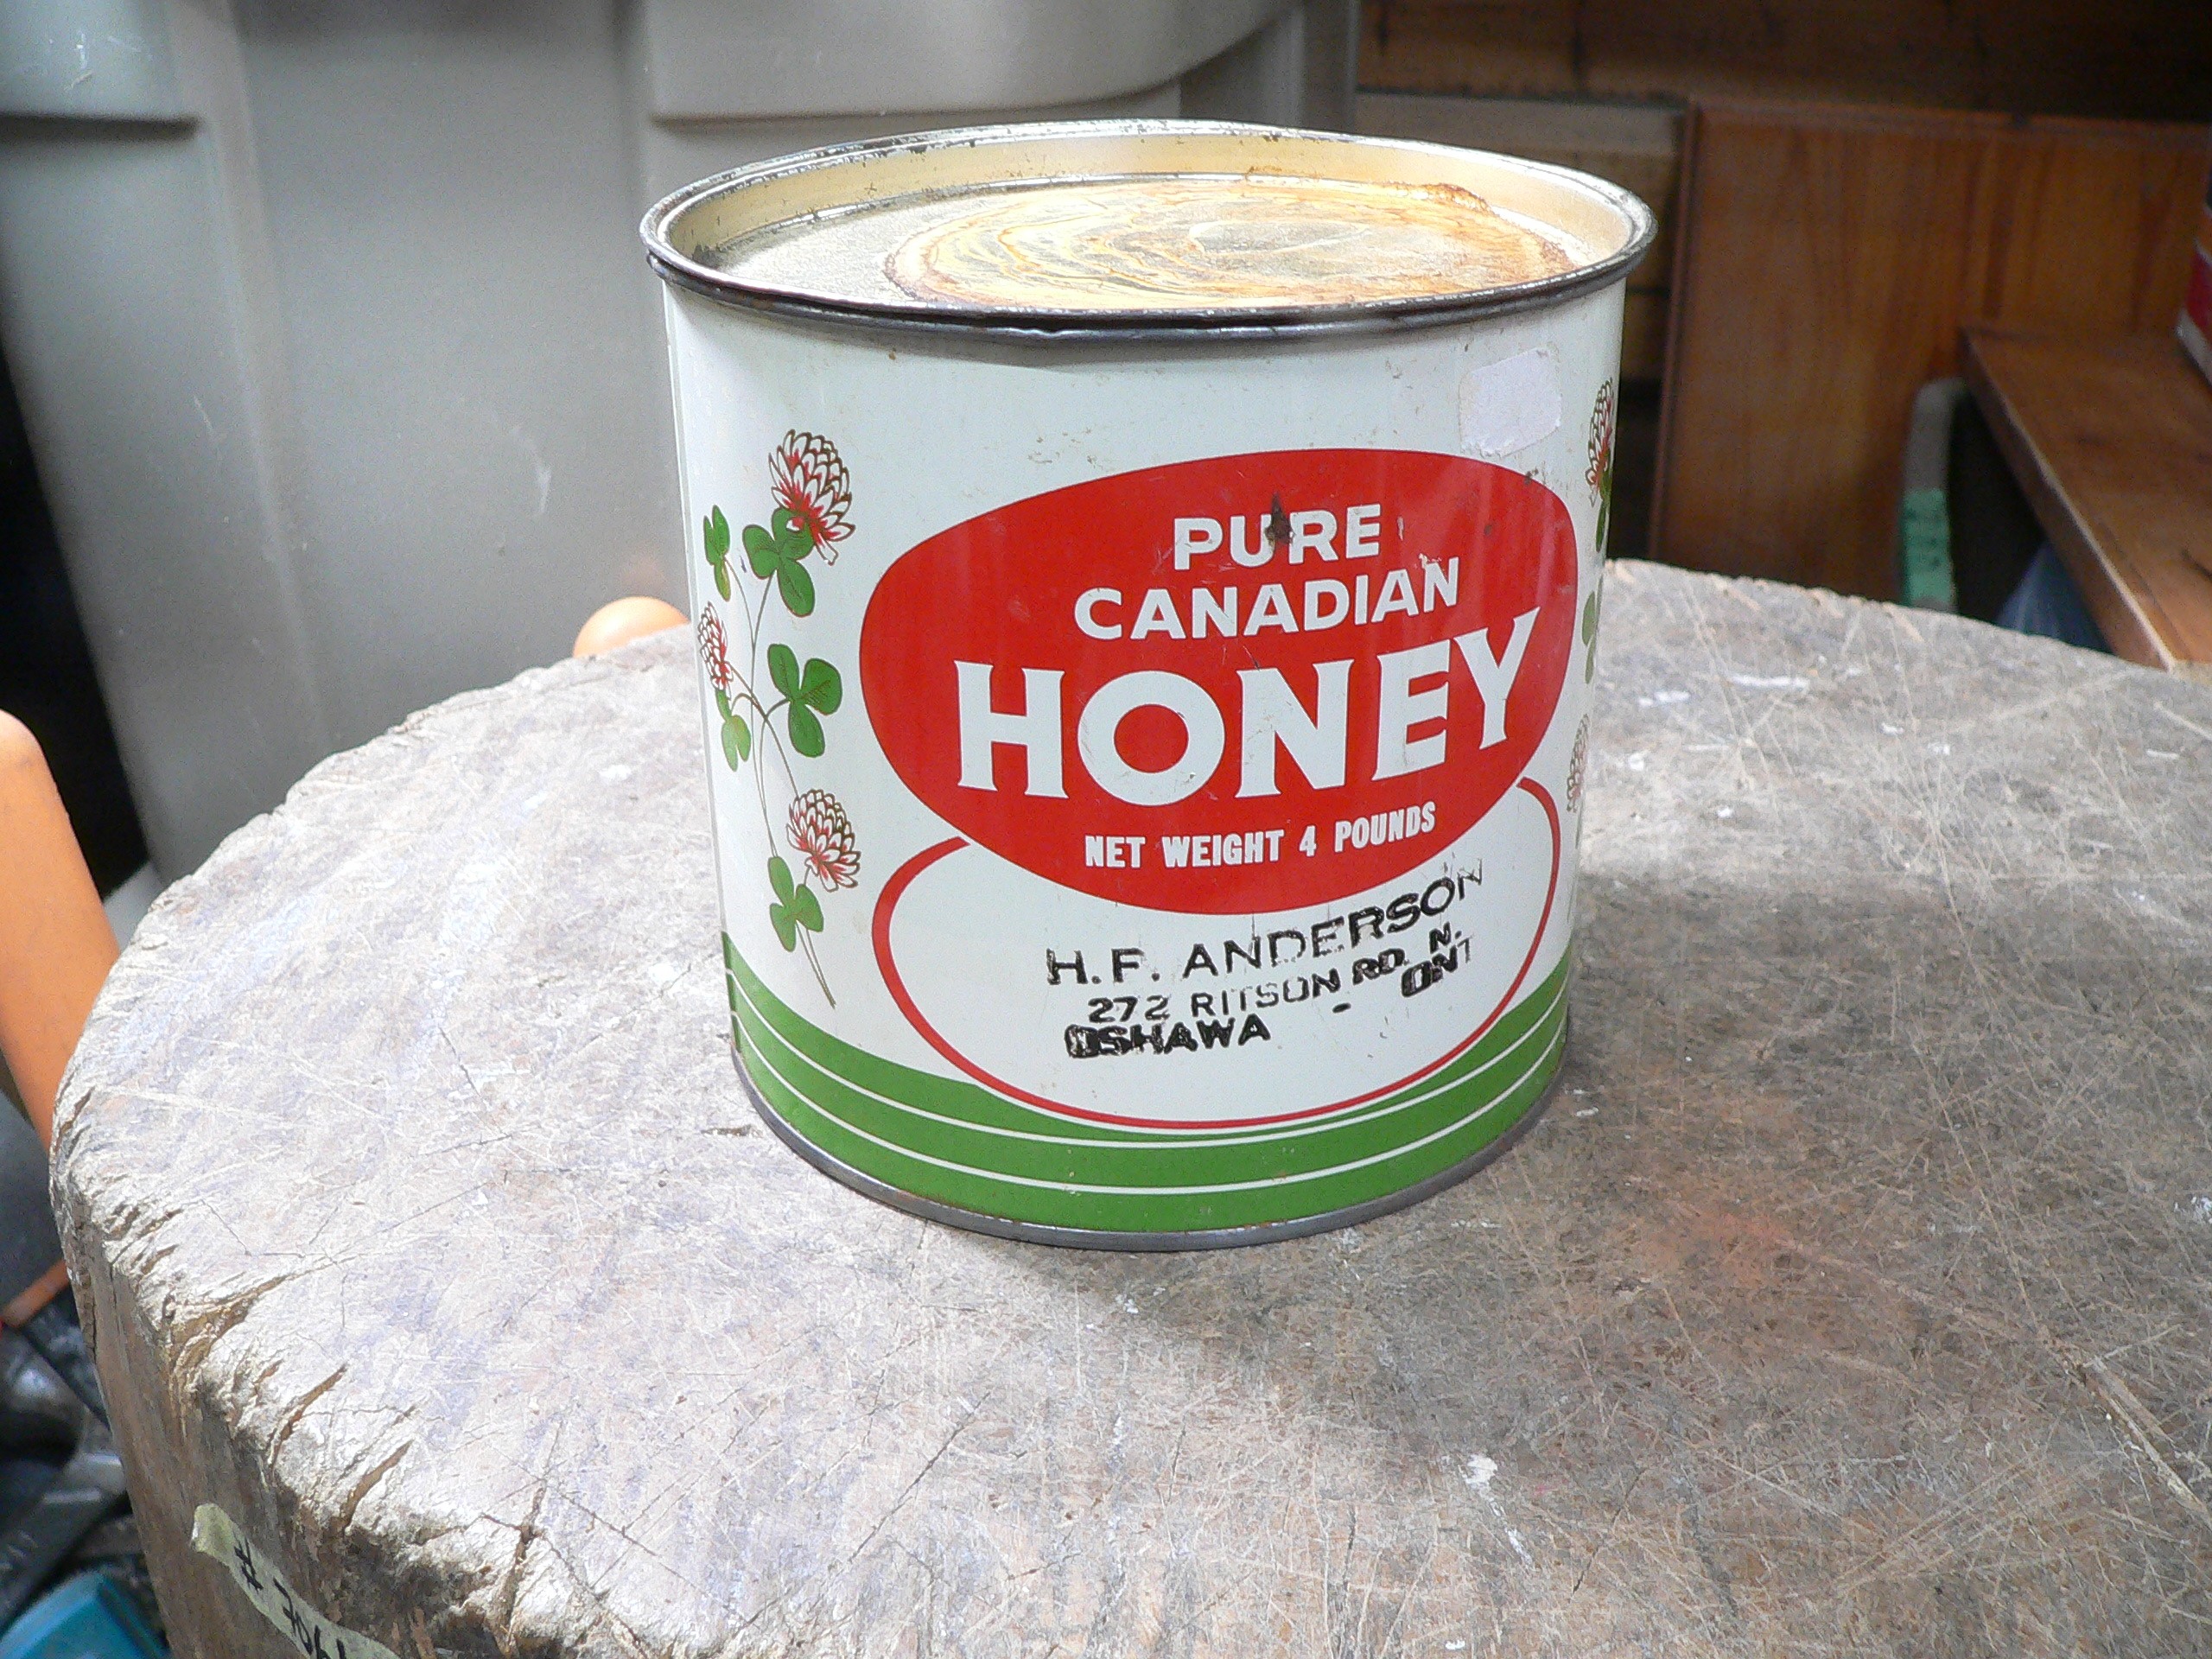 Canne de miel antique # 10715.2